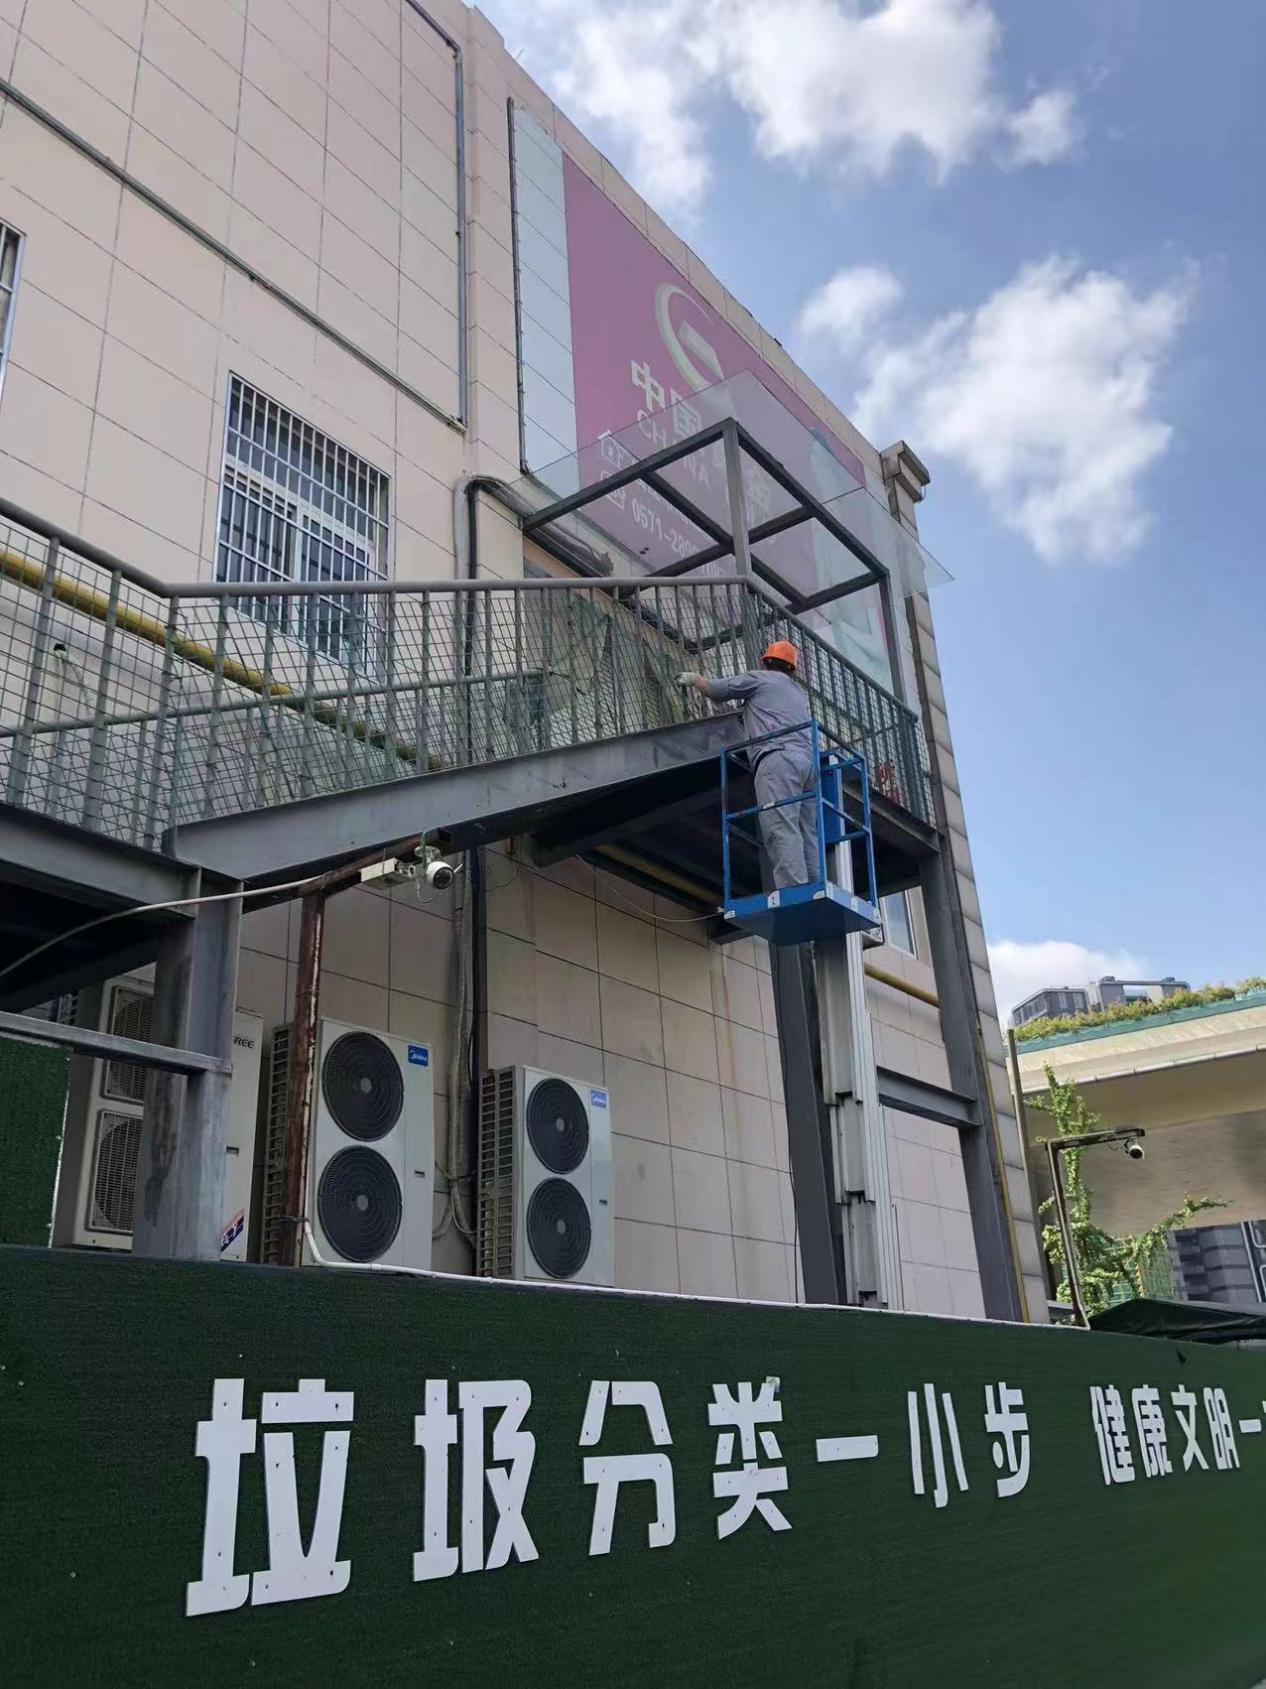  钱江商城钢楼梯进行除锈涂漆